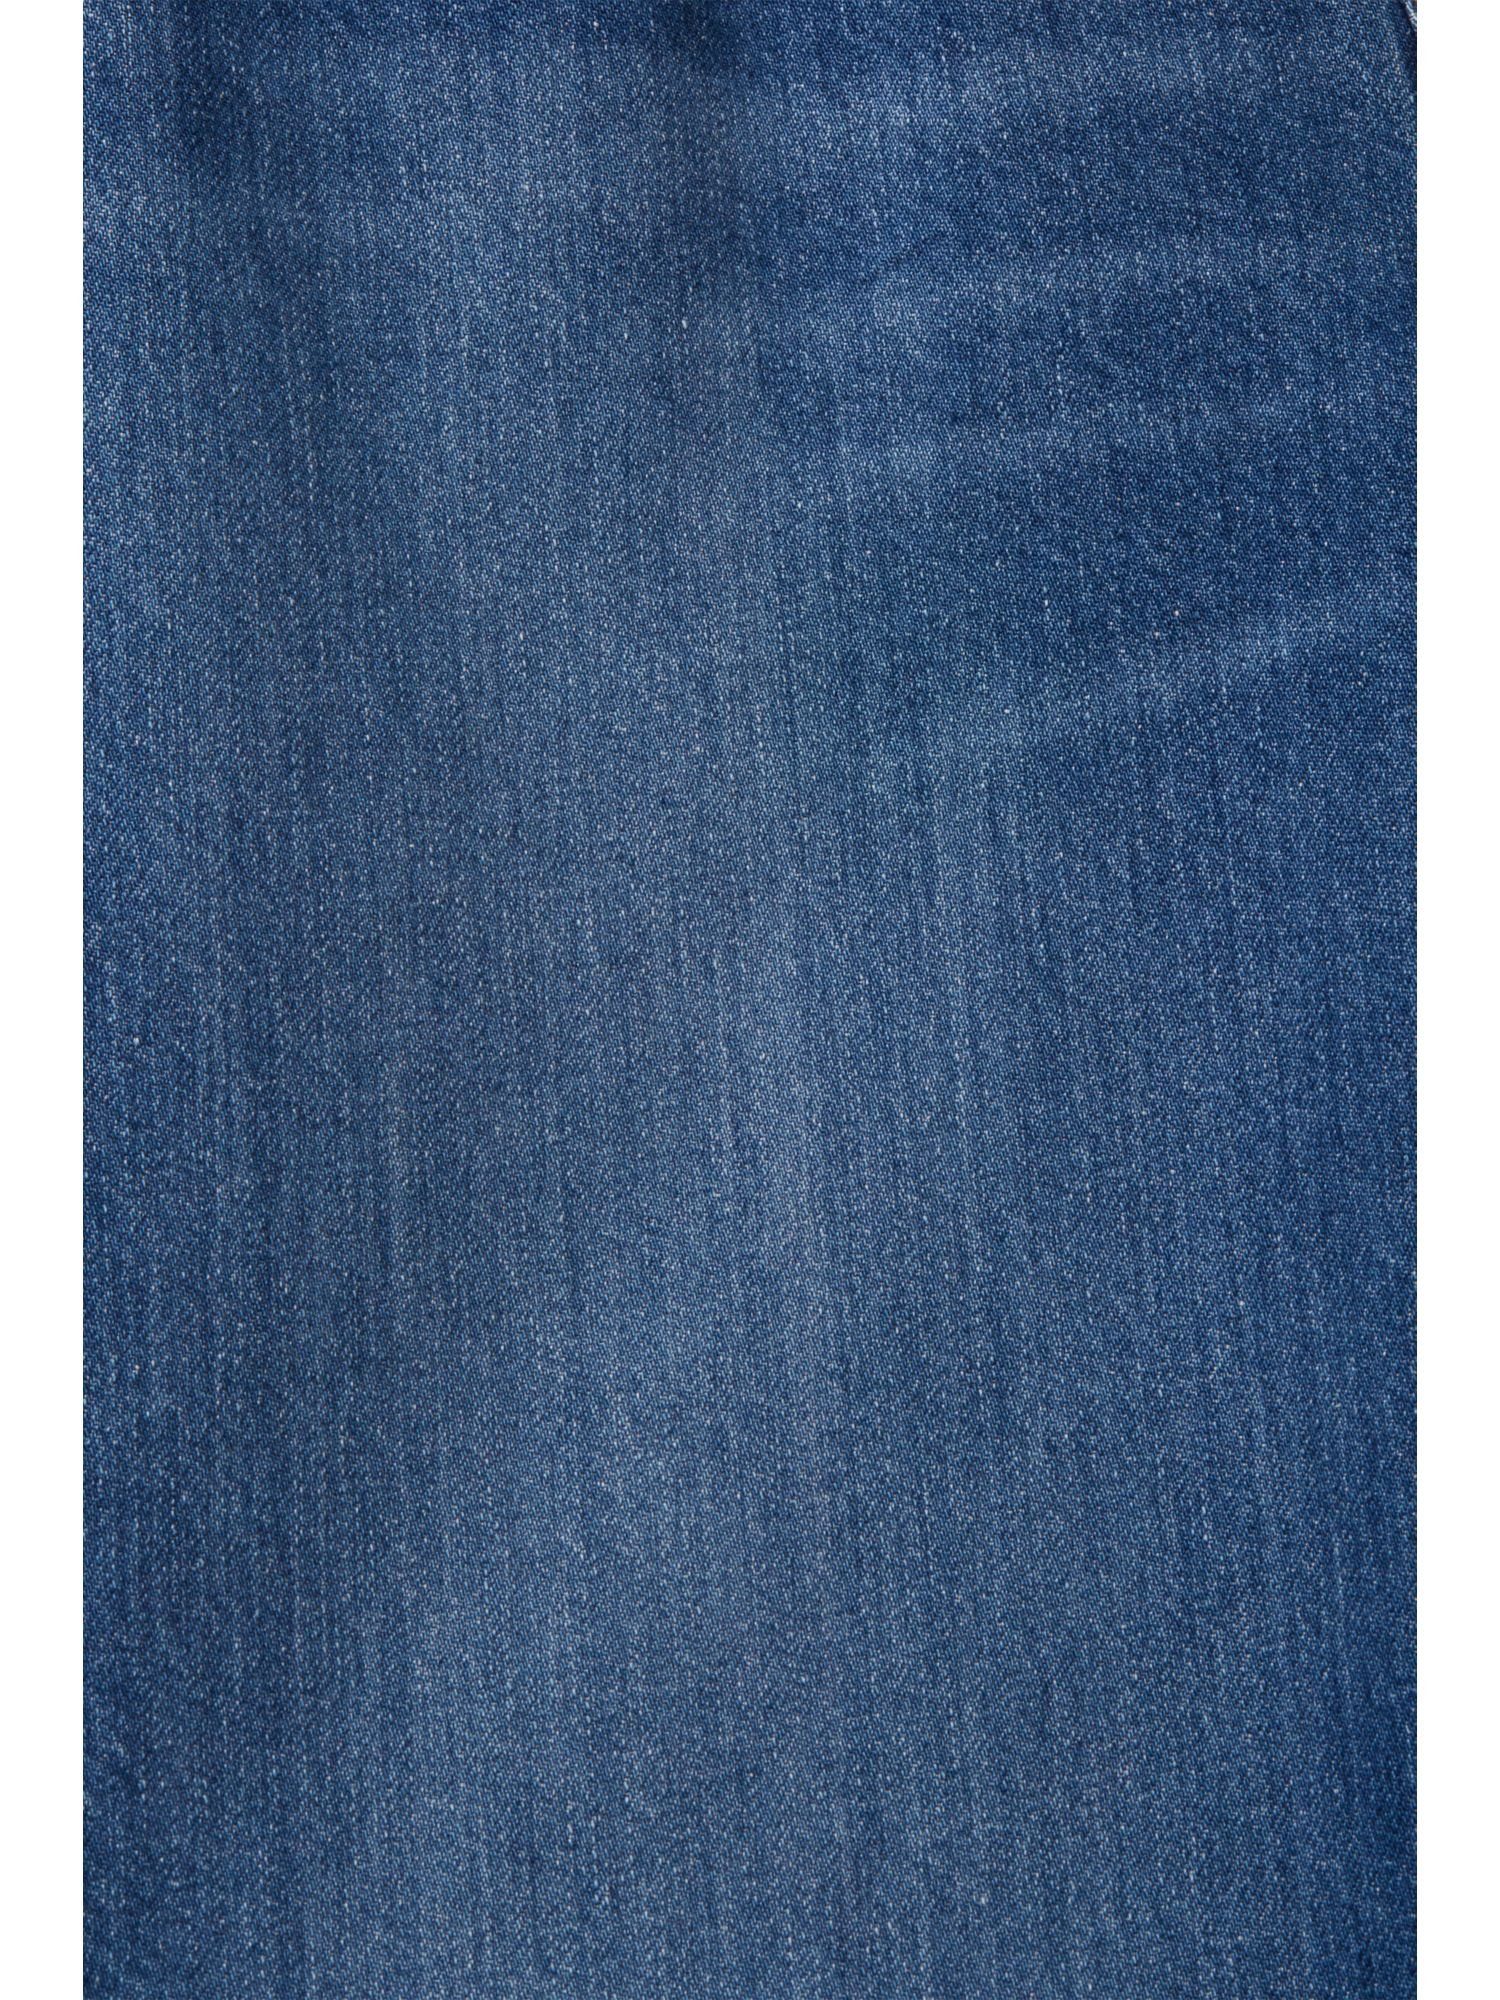 mit MEDIUM und Esprit Jeans Bund BLUE WASHED hohem gerader 7/8-Jeans Passform